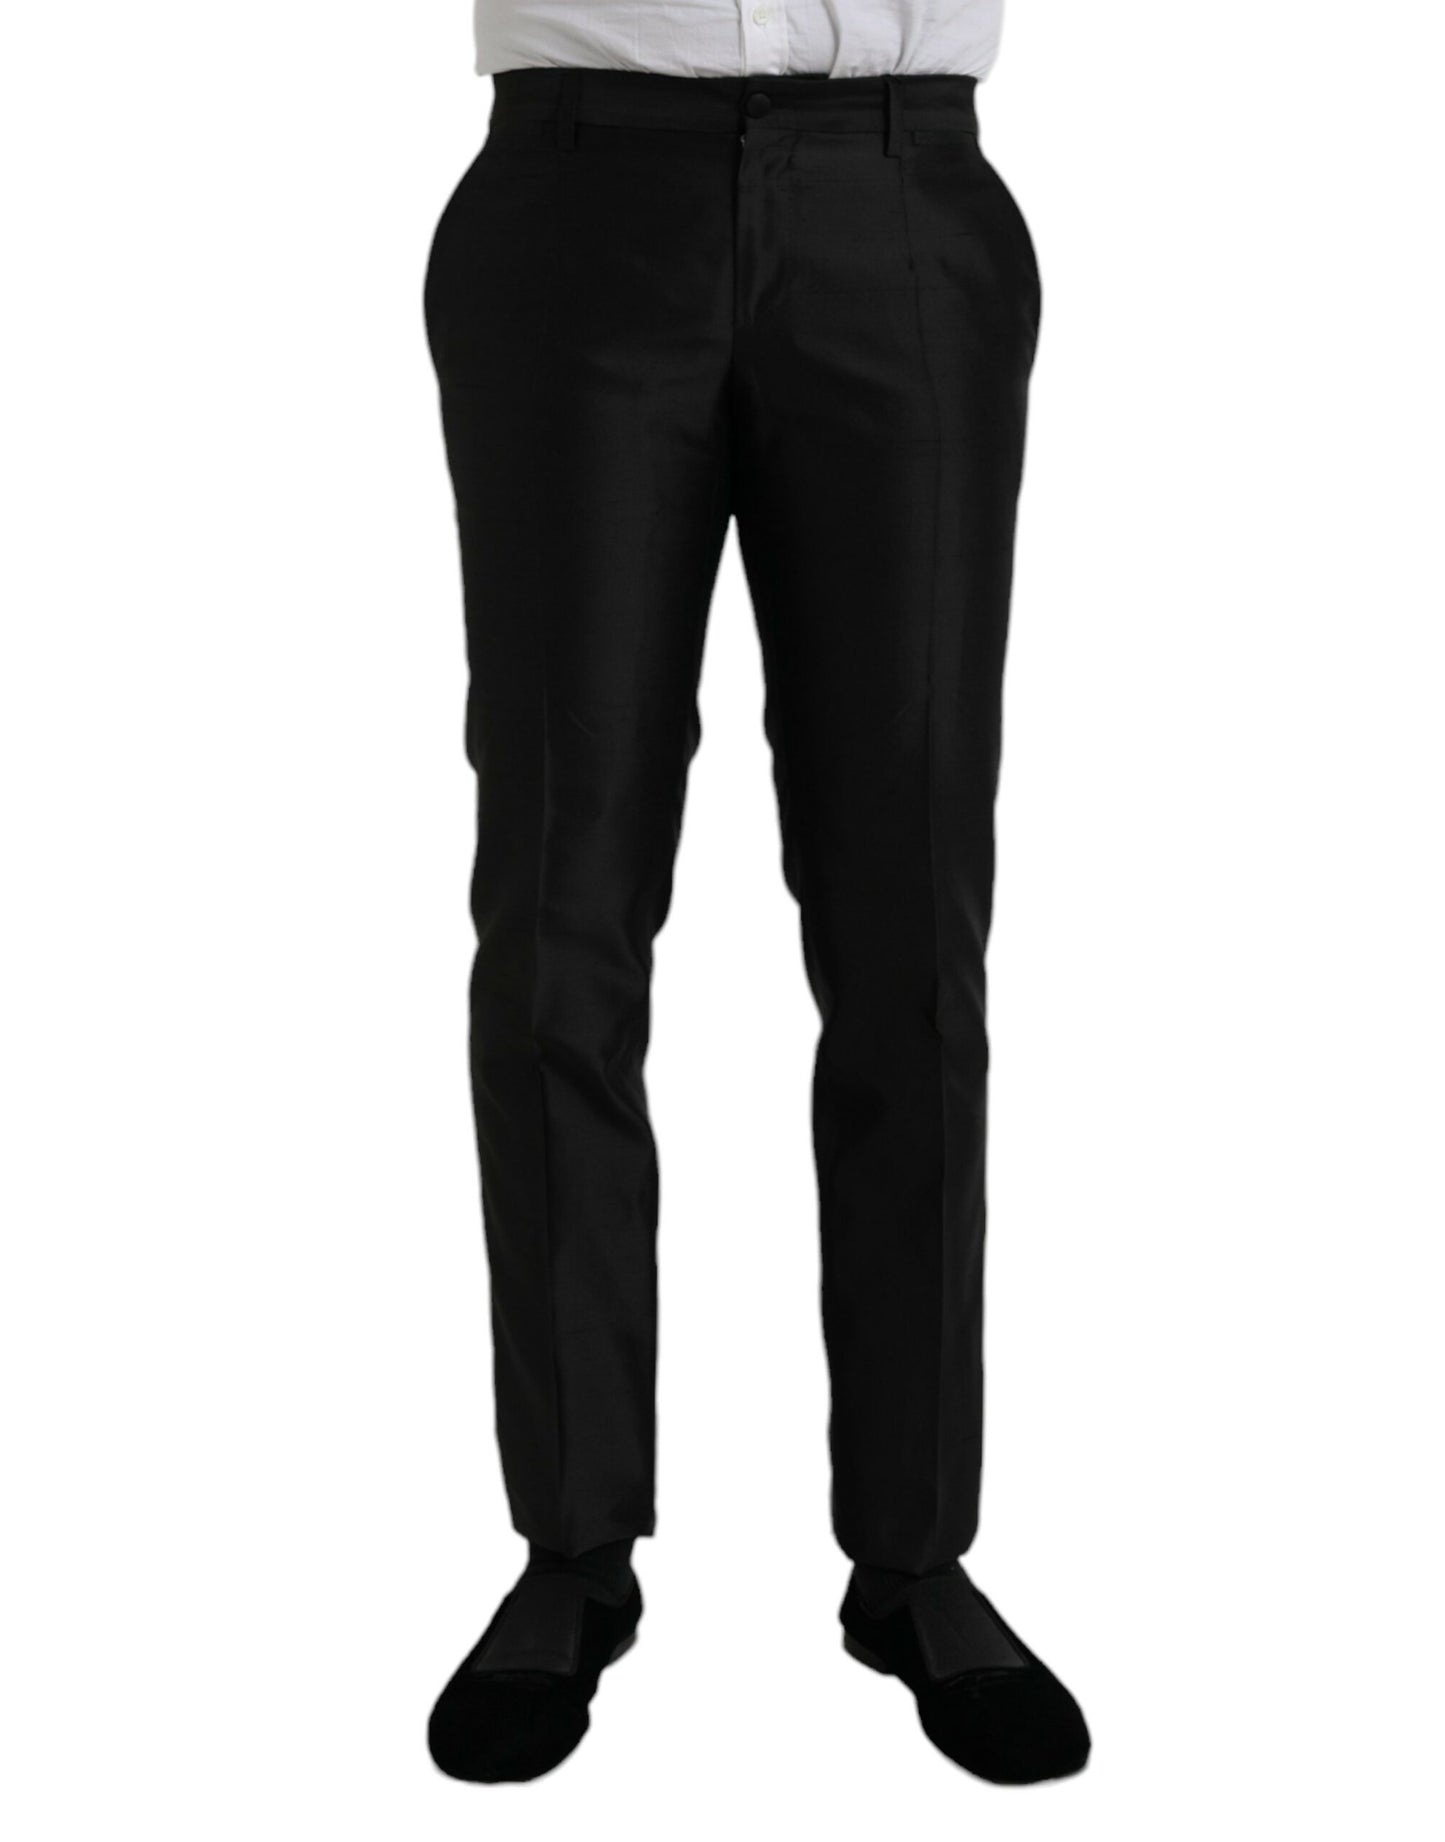 Fashionsarah.com Fashionsarah.com Dolce & Gabbana Black Silk SlimFit Dress Formal Pants